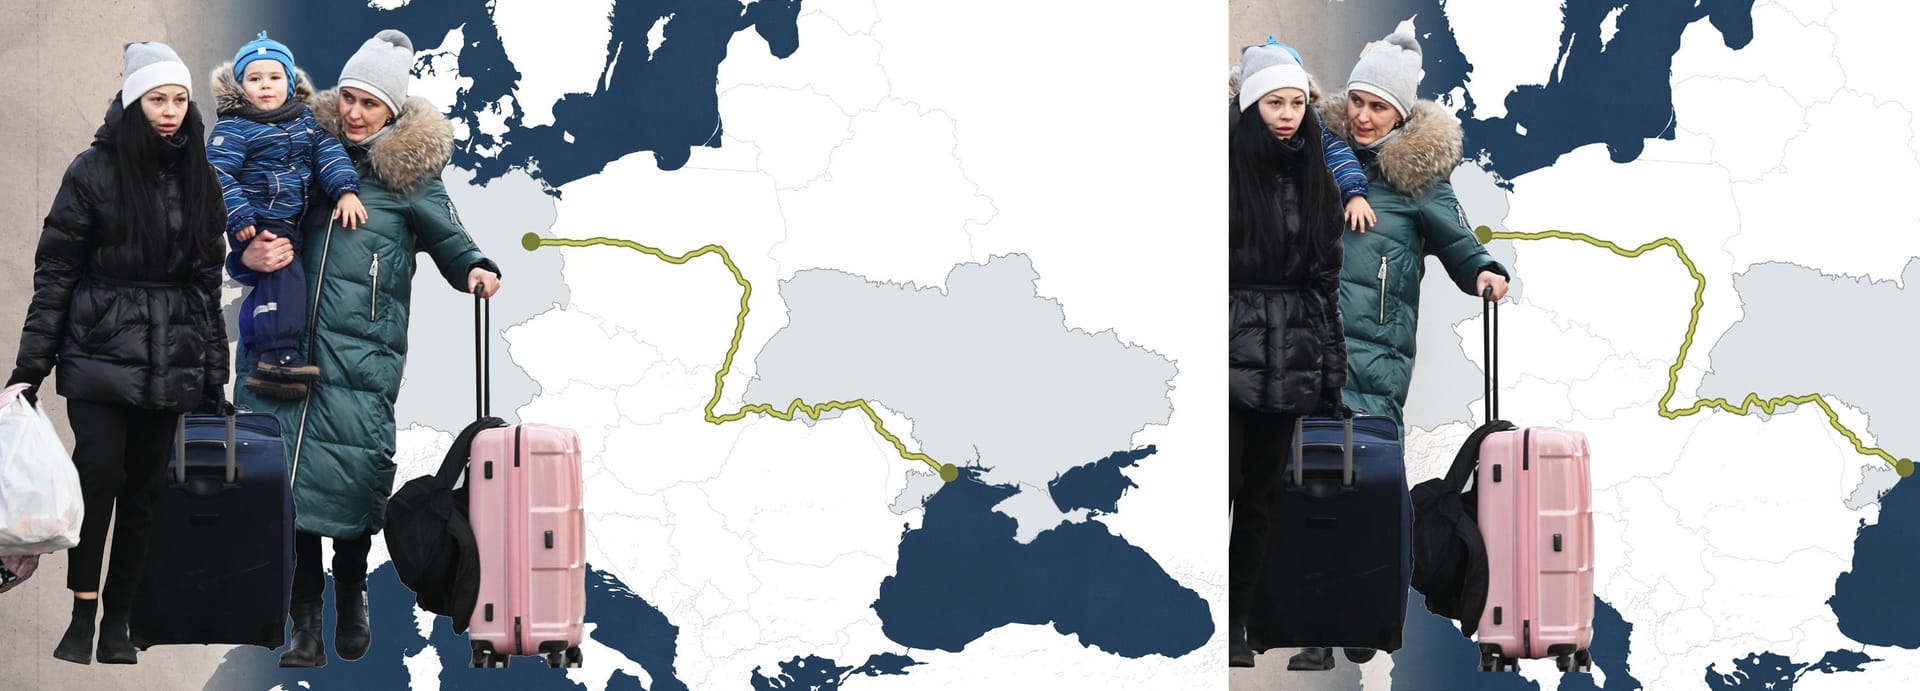 Eine Gruppe ukrainischer Flüchtenden vor einer Europakarte (Collage)